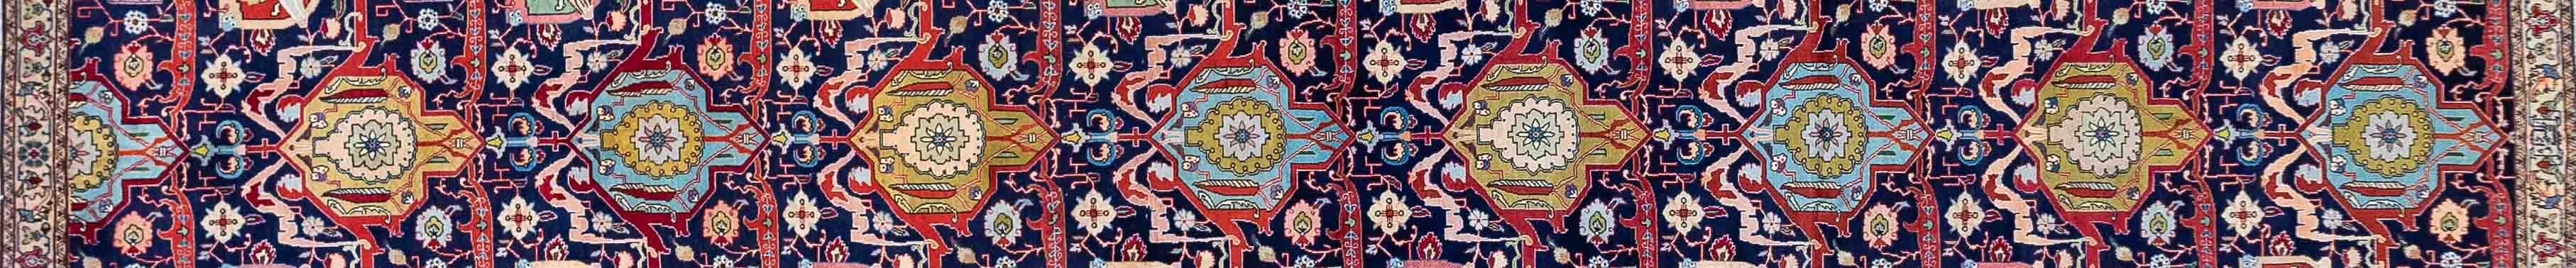 Tabriz Persian Carpet Rug N1Carpet Canada Montreal Tapis Persan 2350